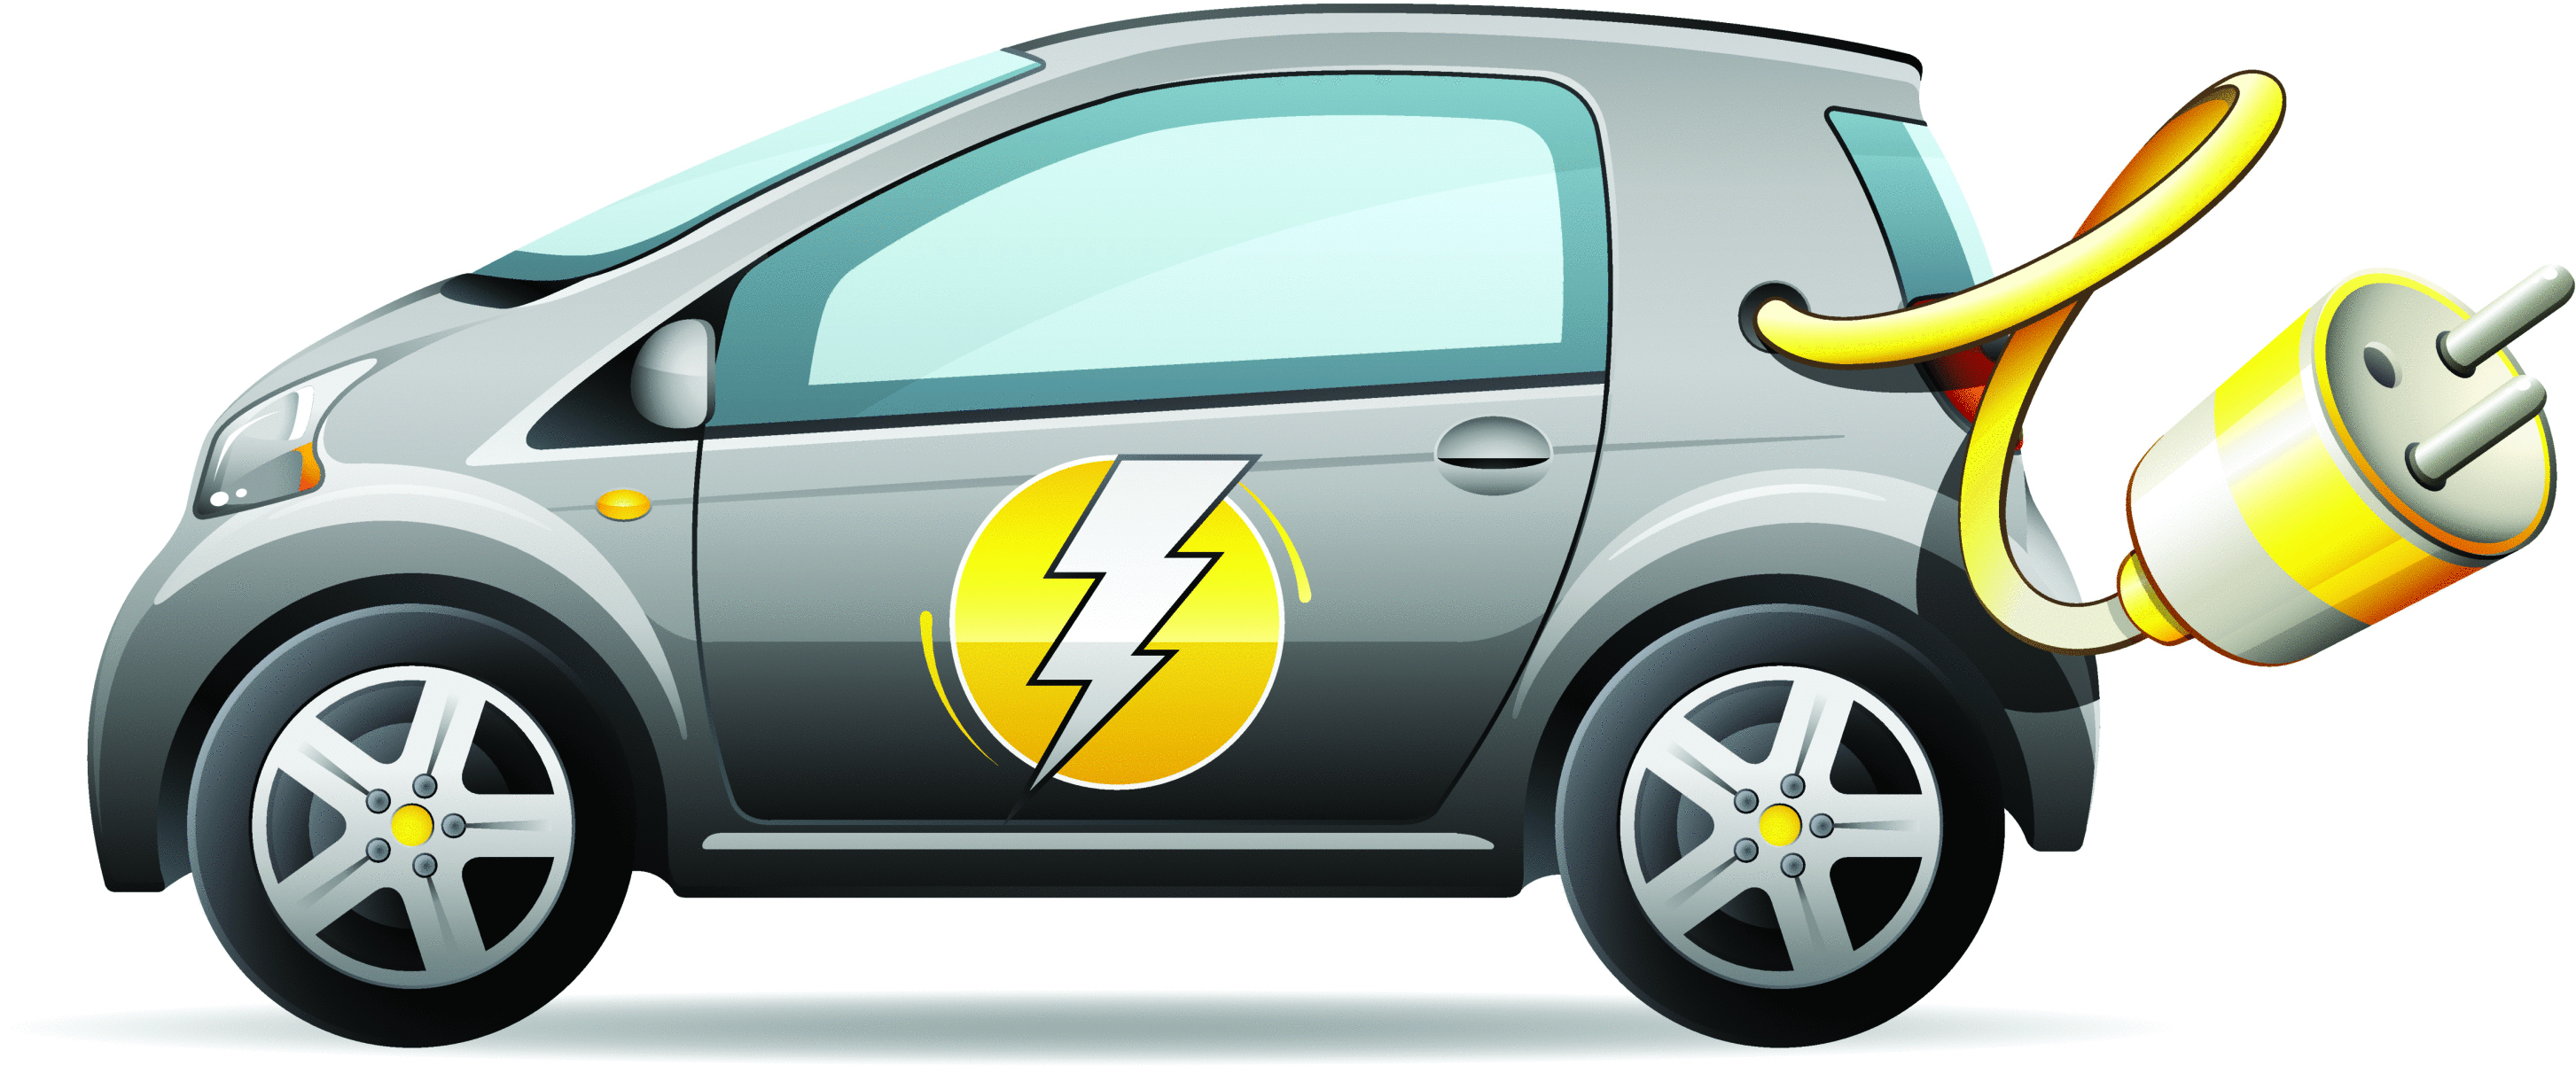 استطلاع: واحد من كل سبعة ألمان يفكر في شراء سيارة كهربائية